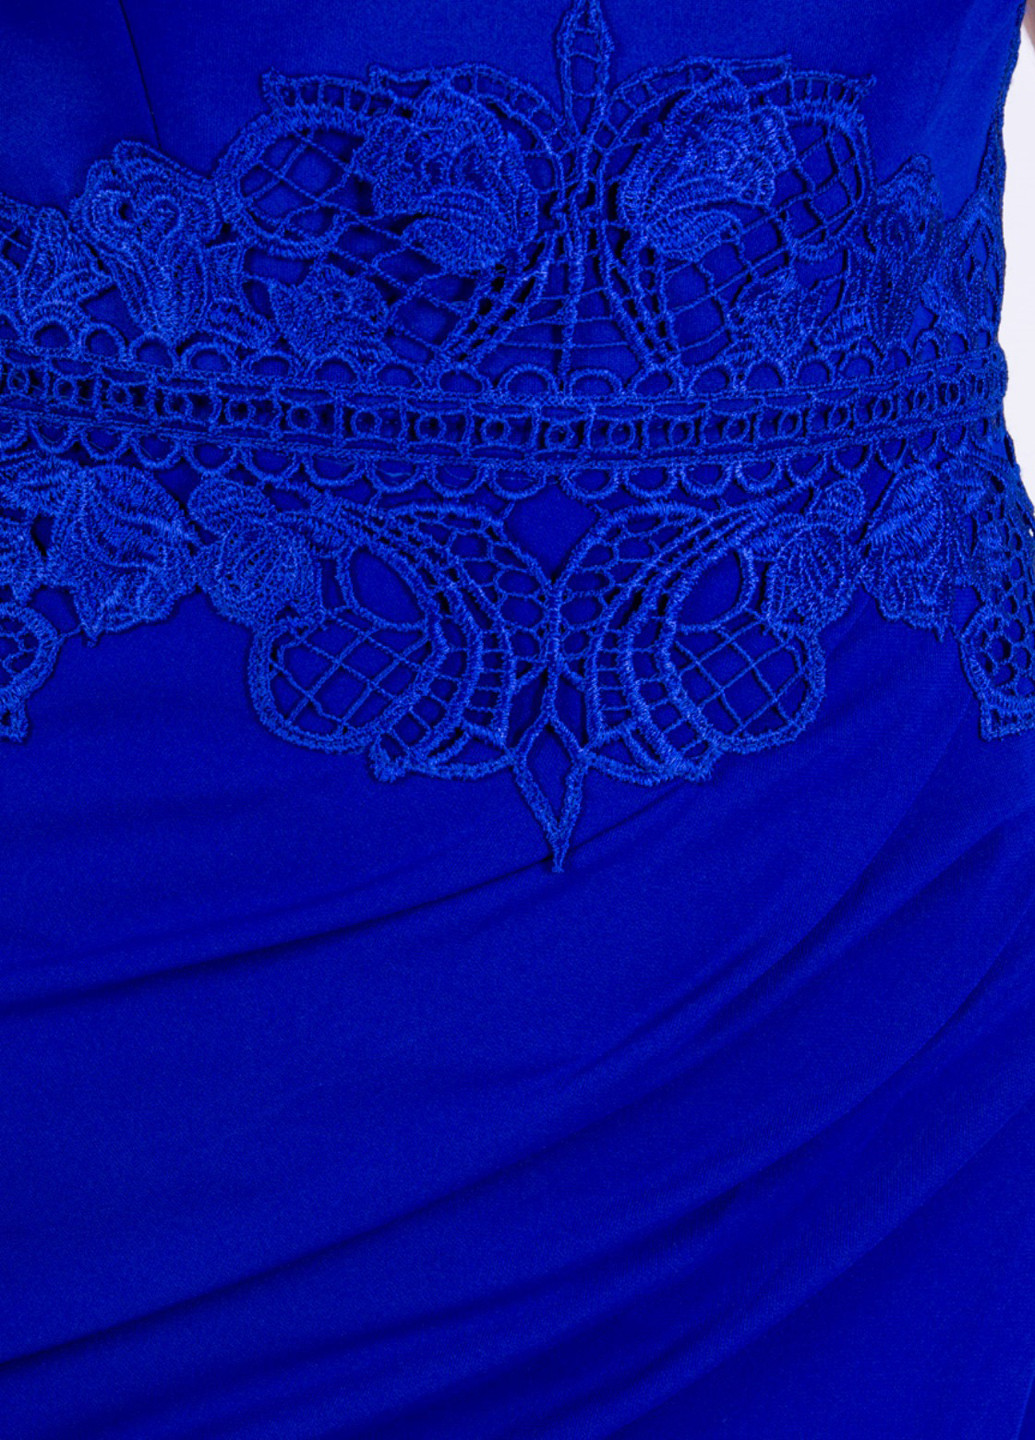 Синя вечірня плаття, сукня на запах, з відкритими плечима Lipsy однотонна